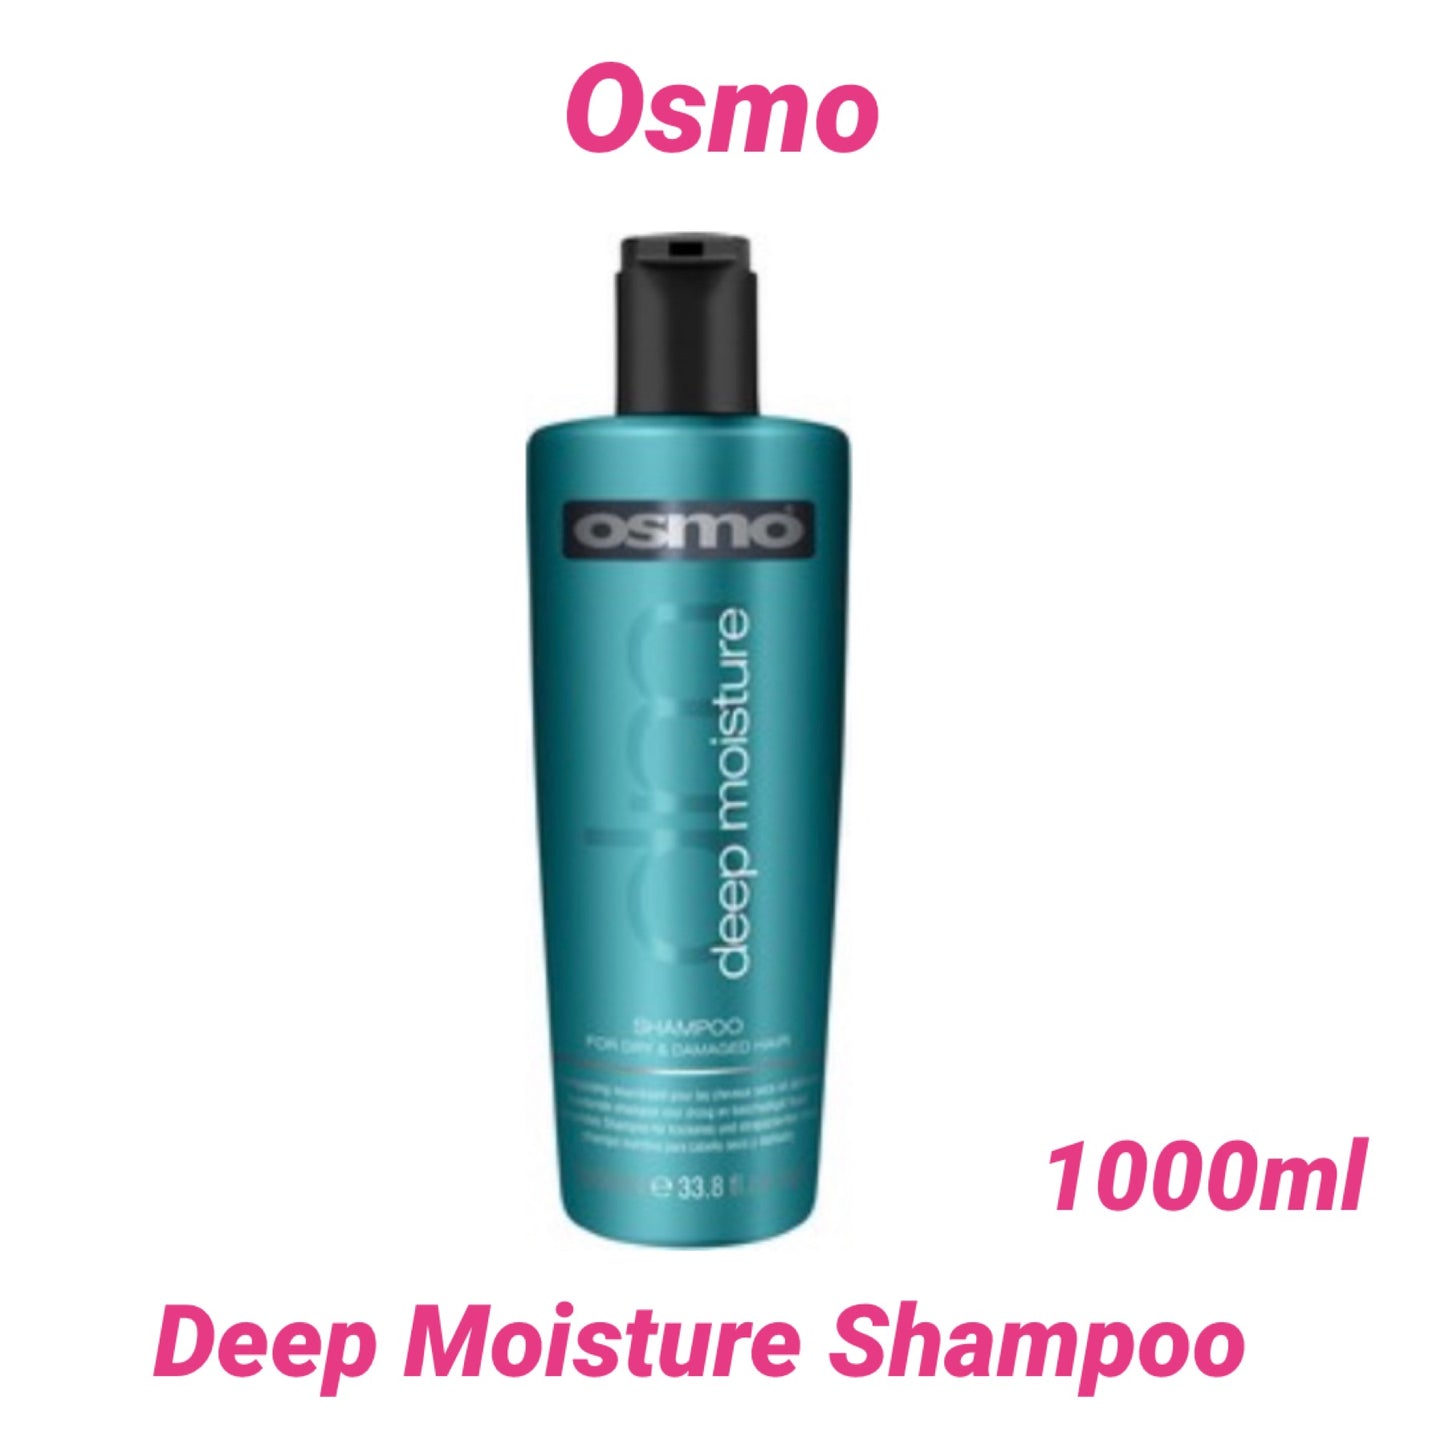 Osmo Deep Moisture Shampoo